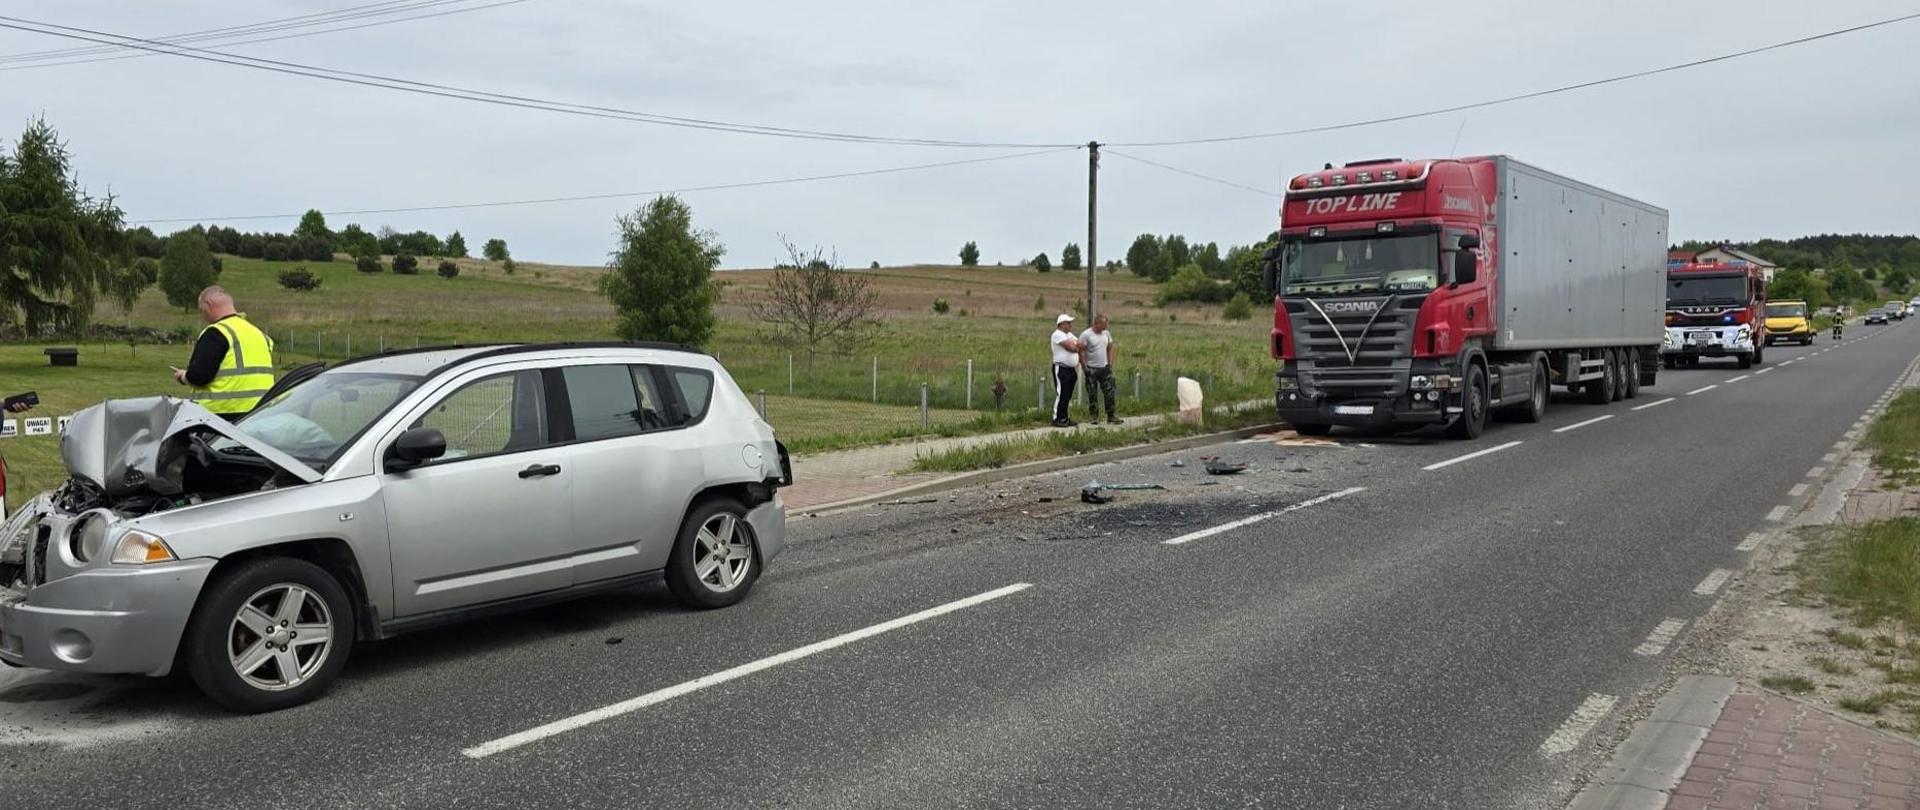 Zdjęcie przedstawia drogę wojewódzką. Po lewej samochód osobowy po zderzeniu z ciężarówka i busem, po prawej ciężarówka uczestnicząca w wypadku komunikacyjnym